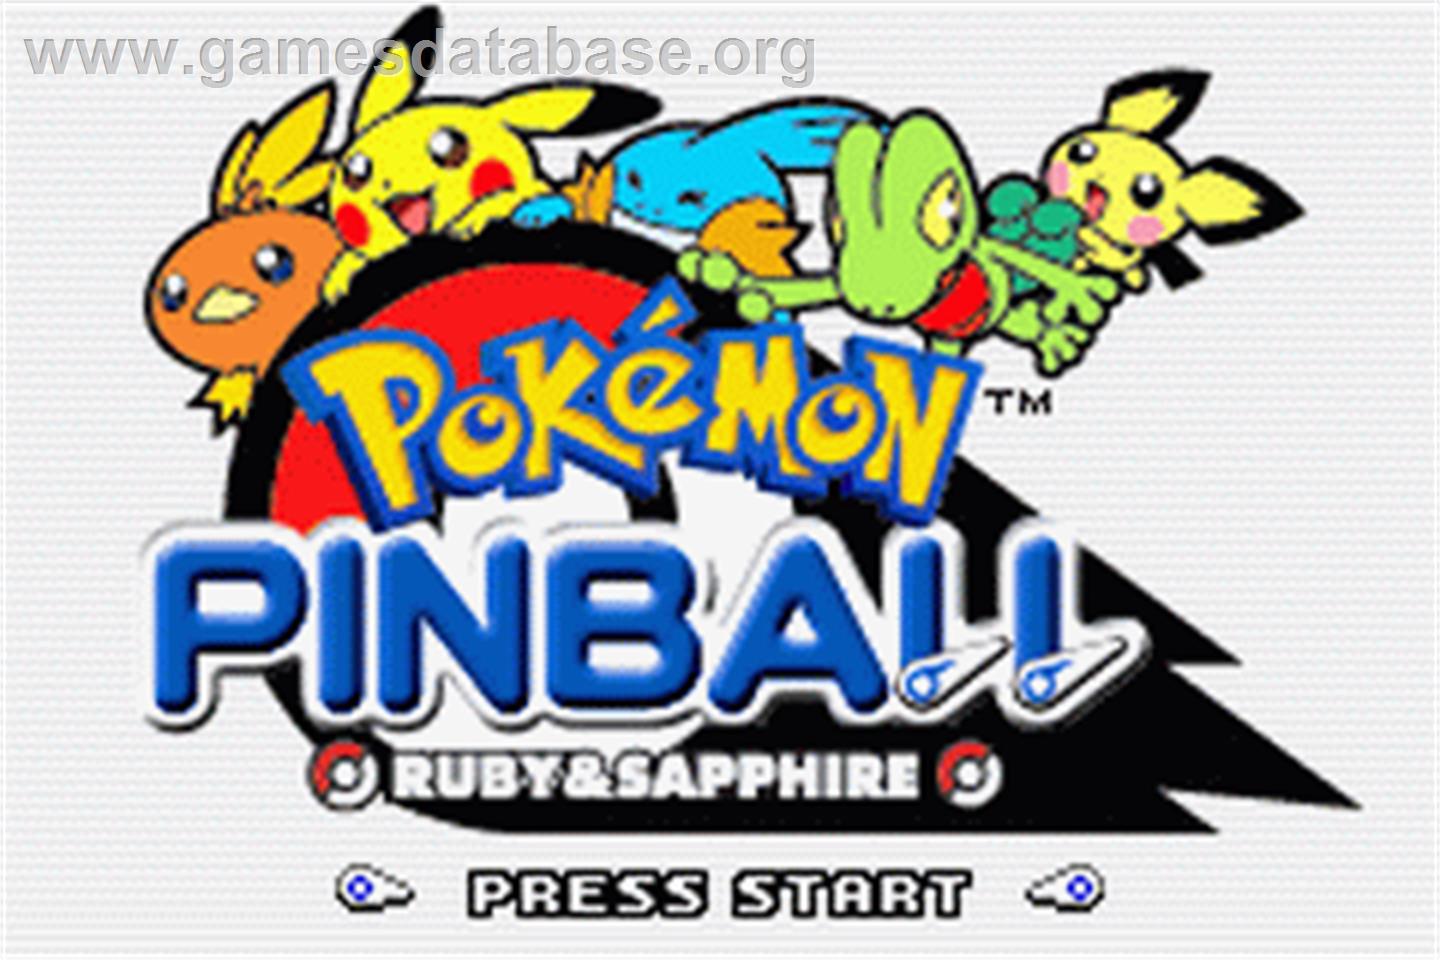 Pokemon Pinball: Ruby & Sapphire - Nintendo Game Boy Advance - Artwork - Title Screen